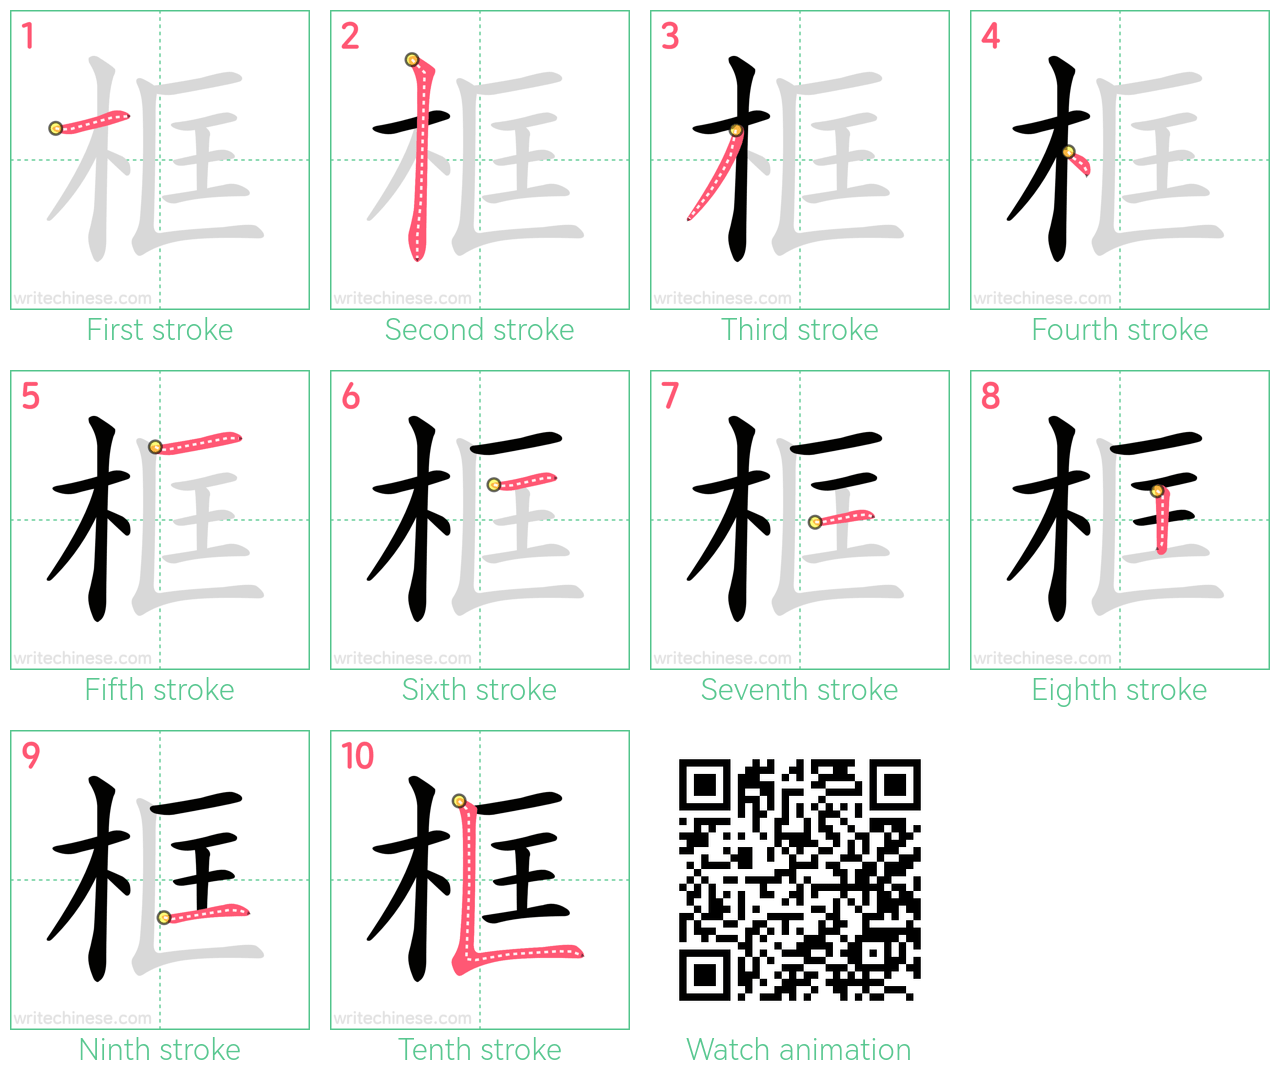 框 step-by-step stroke order diagrams